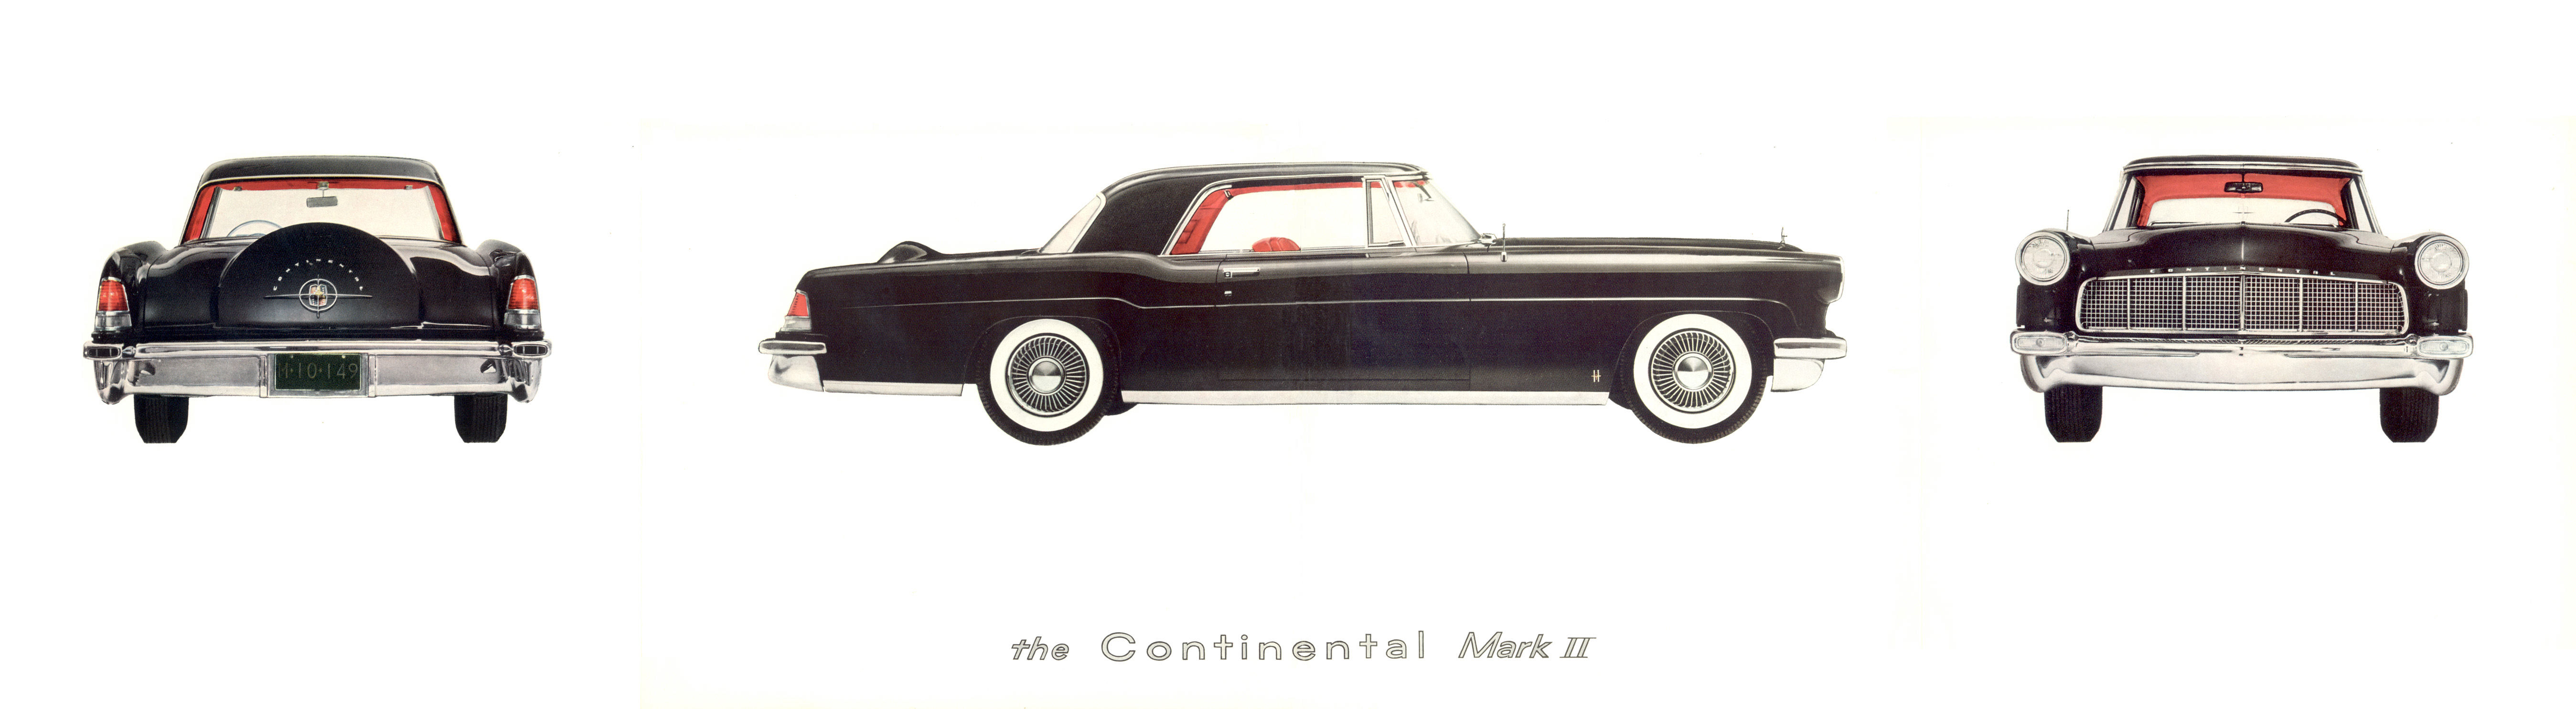 1956 Continental Mark II-03